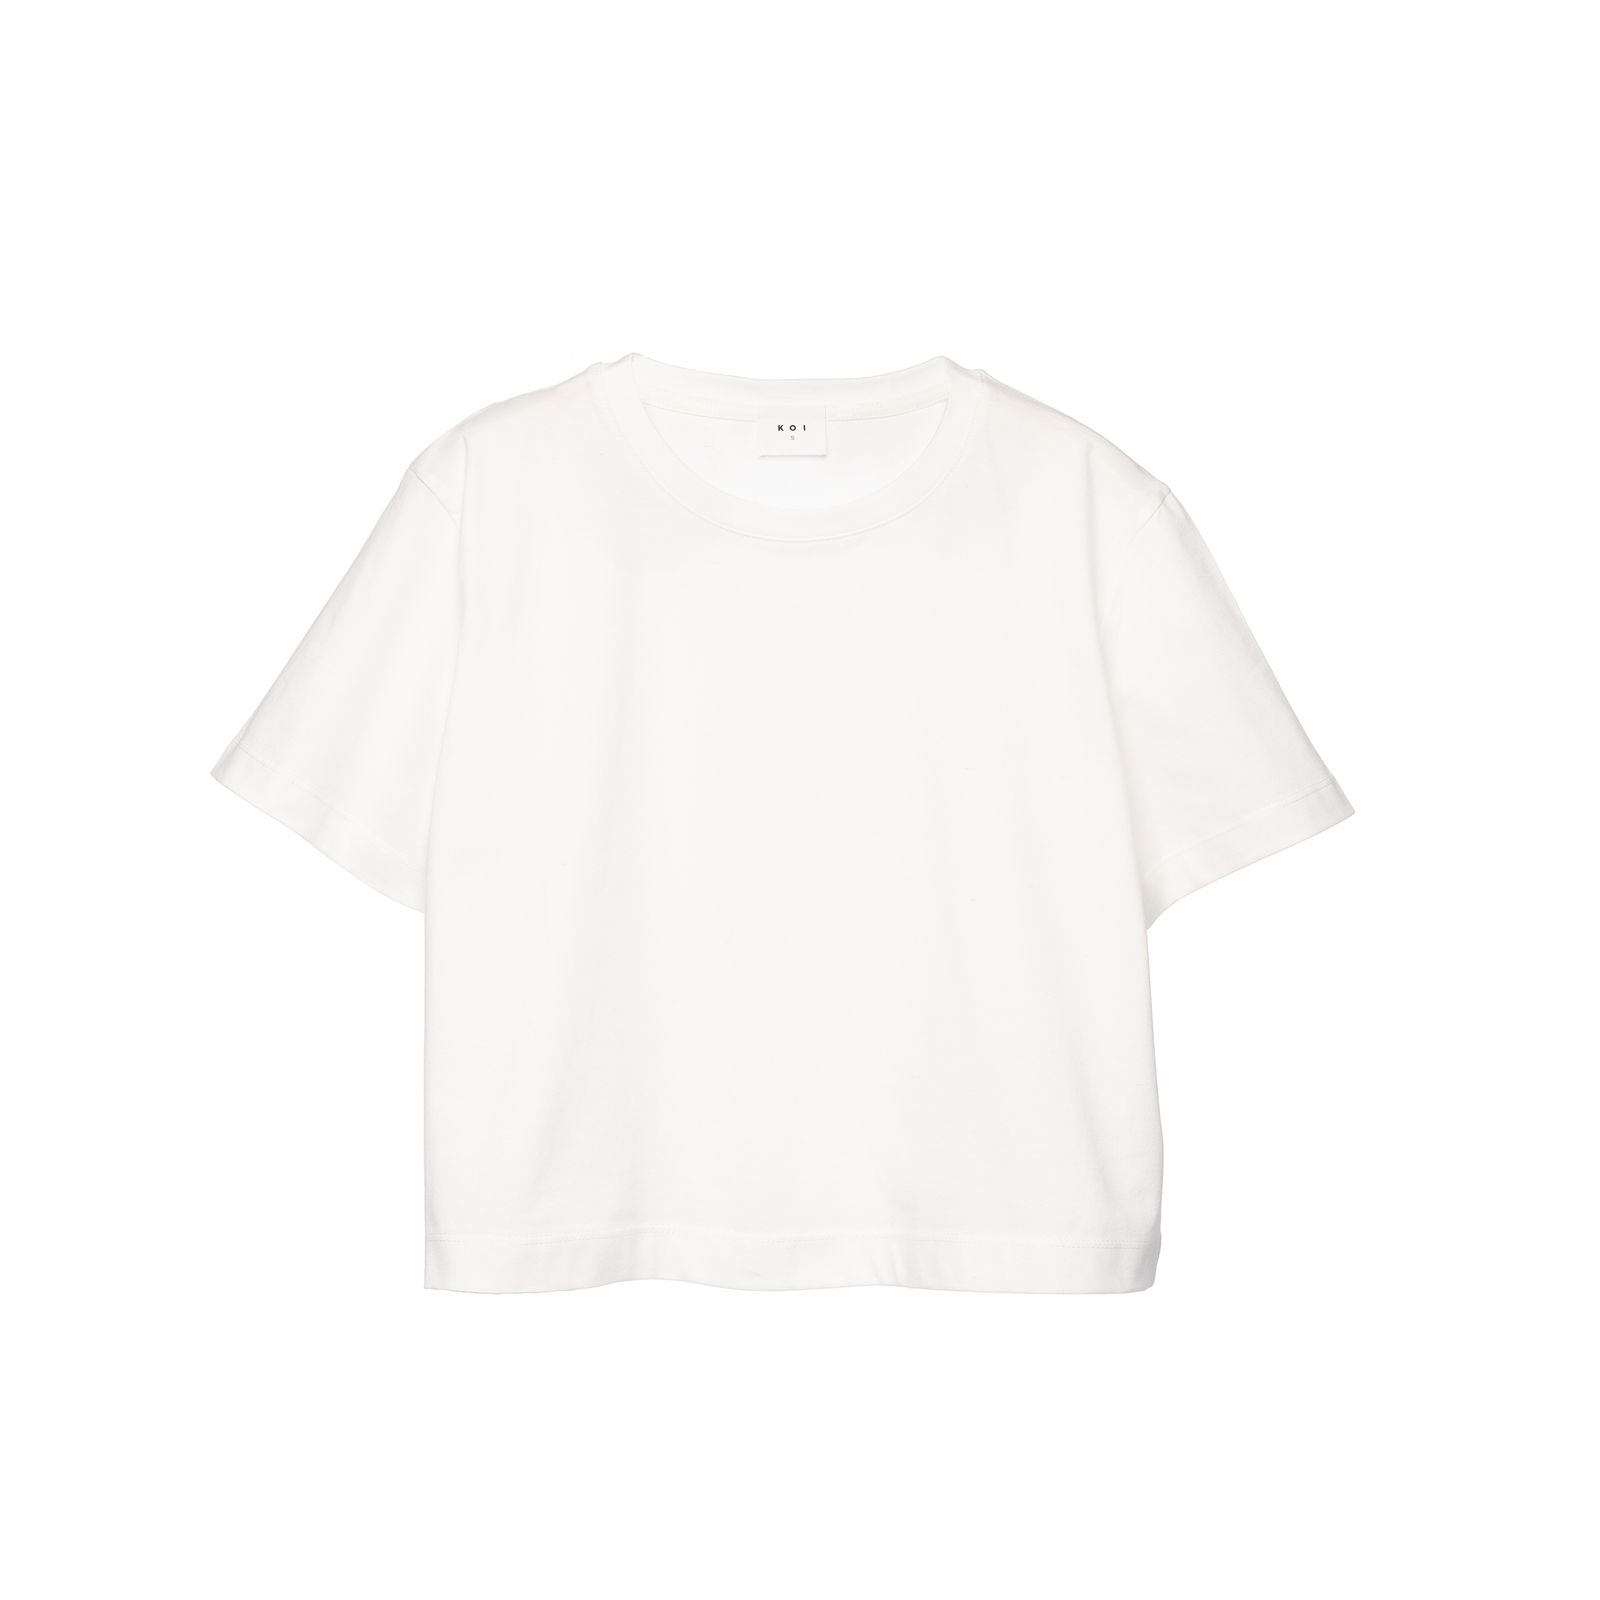 تی شرت آستین کوتاه زنانه کوی مدل 370 رنگ سفید -  - 1